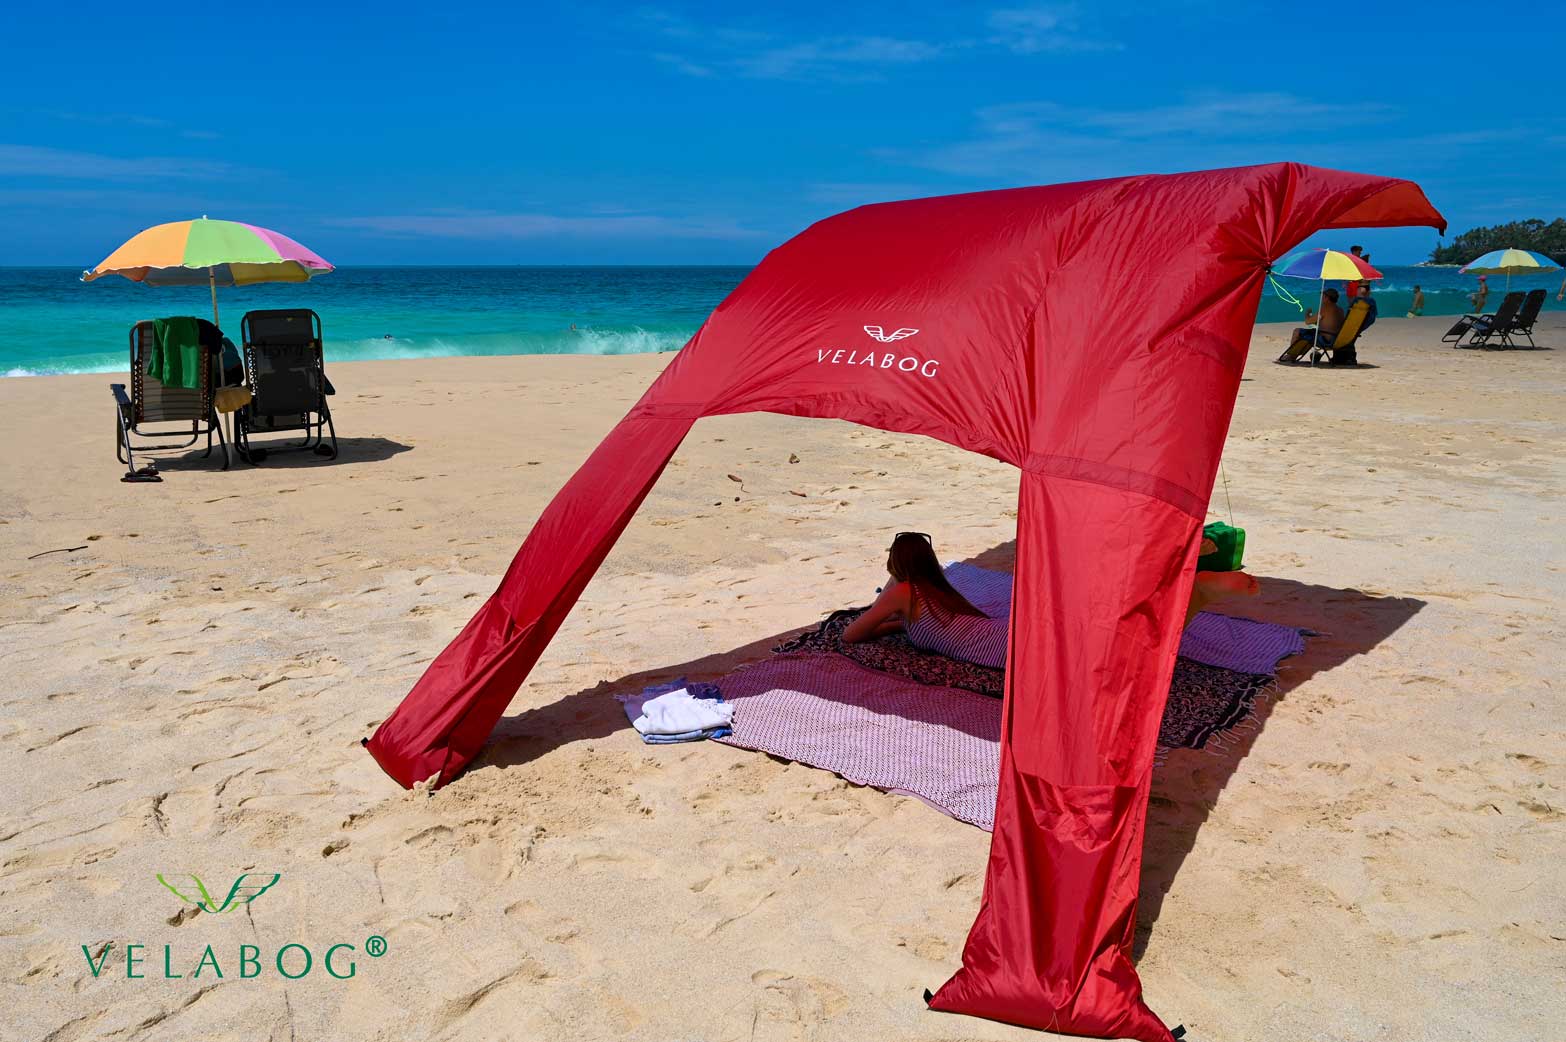 Toldo playa Velabog Breeze rojo. Mucha más sombra en comparación con sombrillas de playa. Mucho más aire en comparación con carpas de playa. Opción de montaje desde viento ligero a fuerte. Sombra generosa.